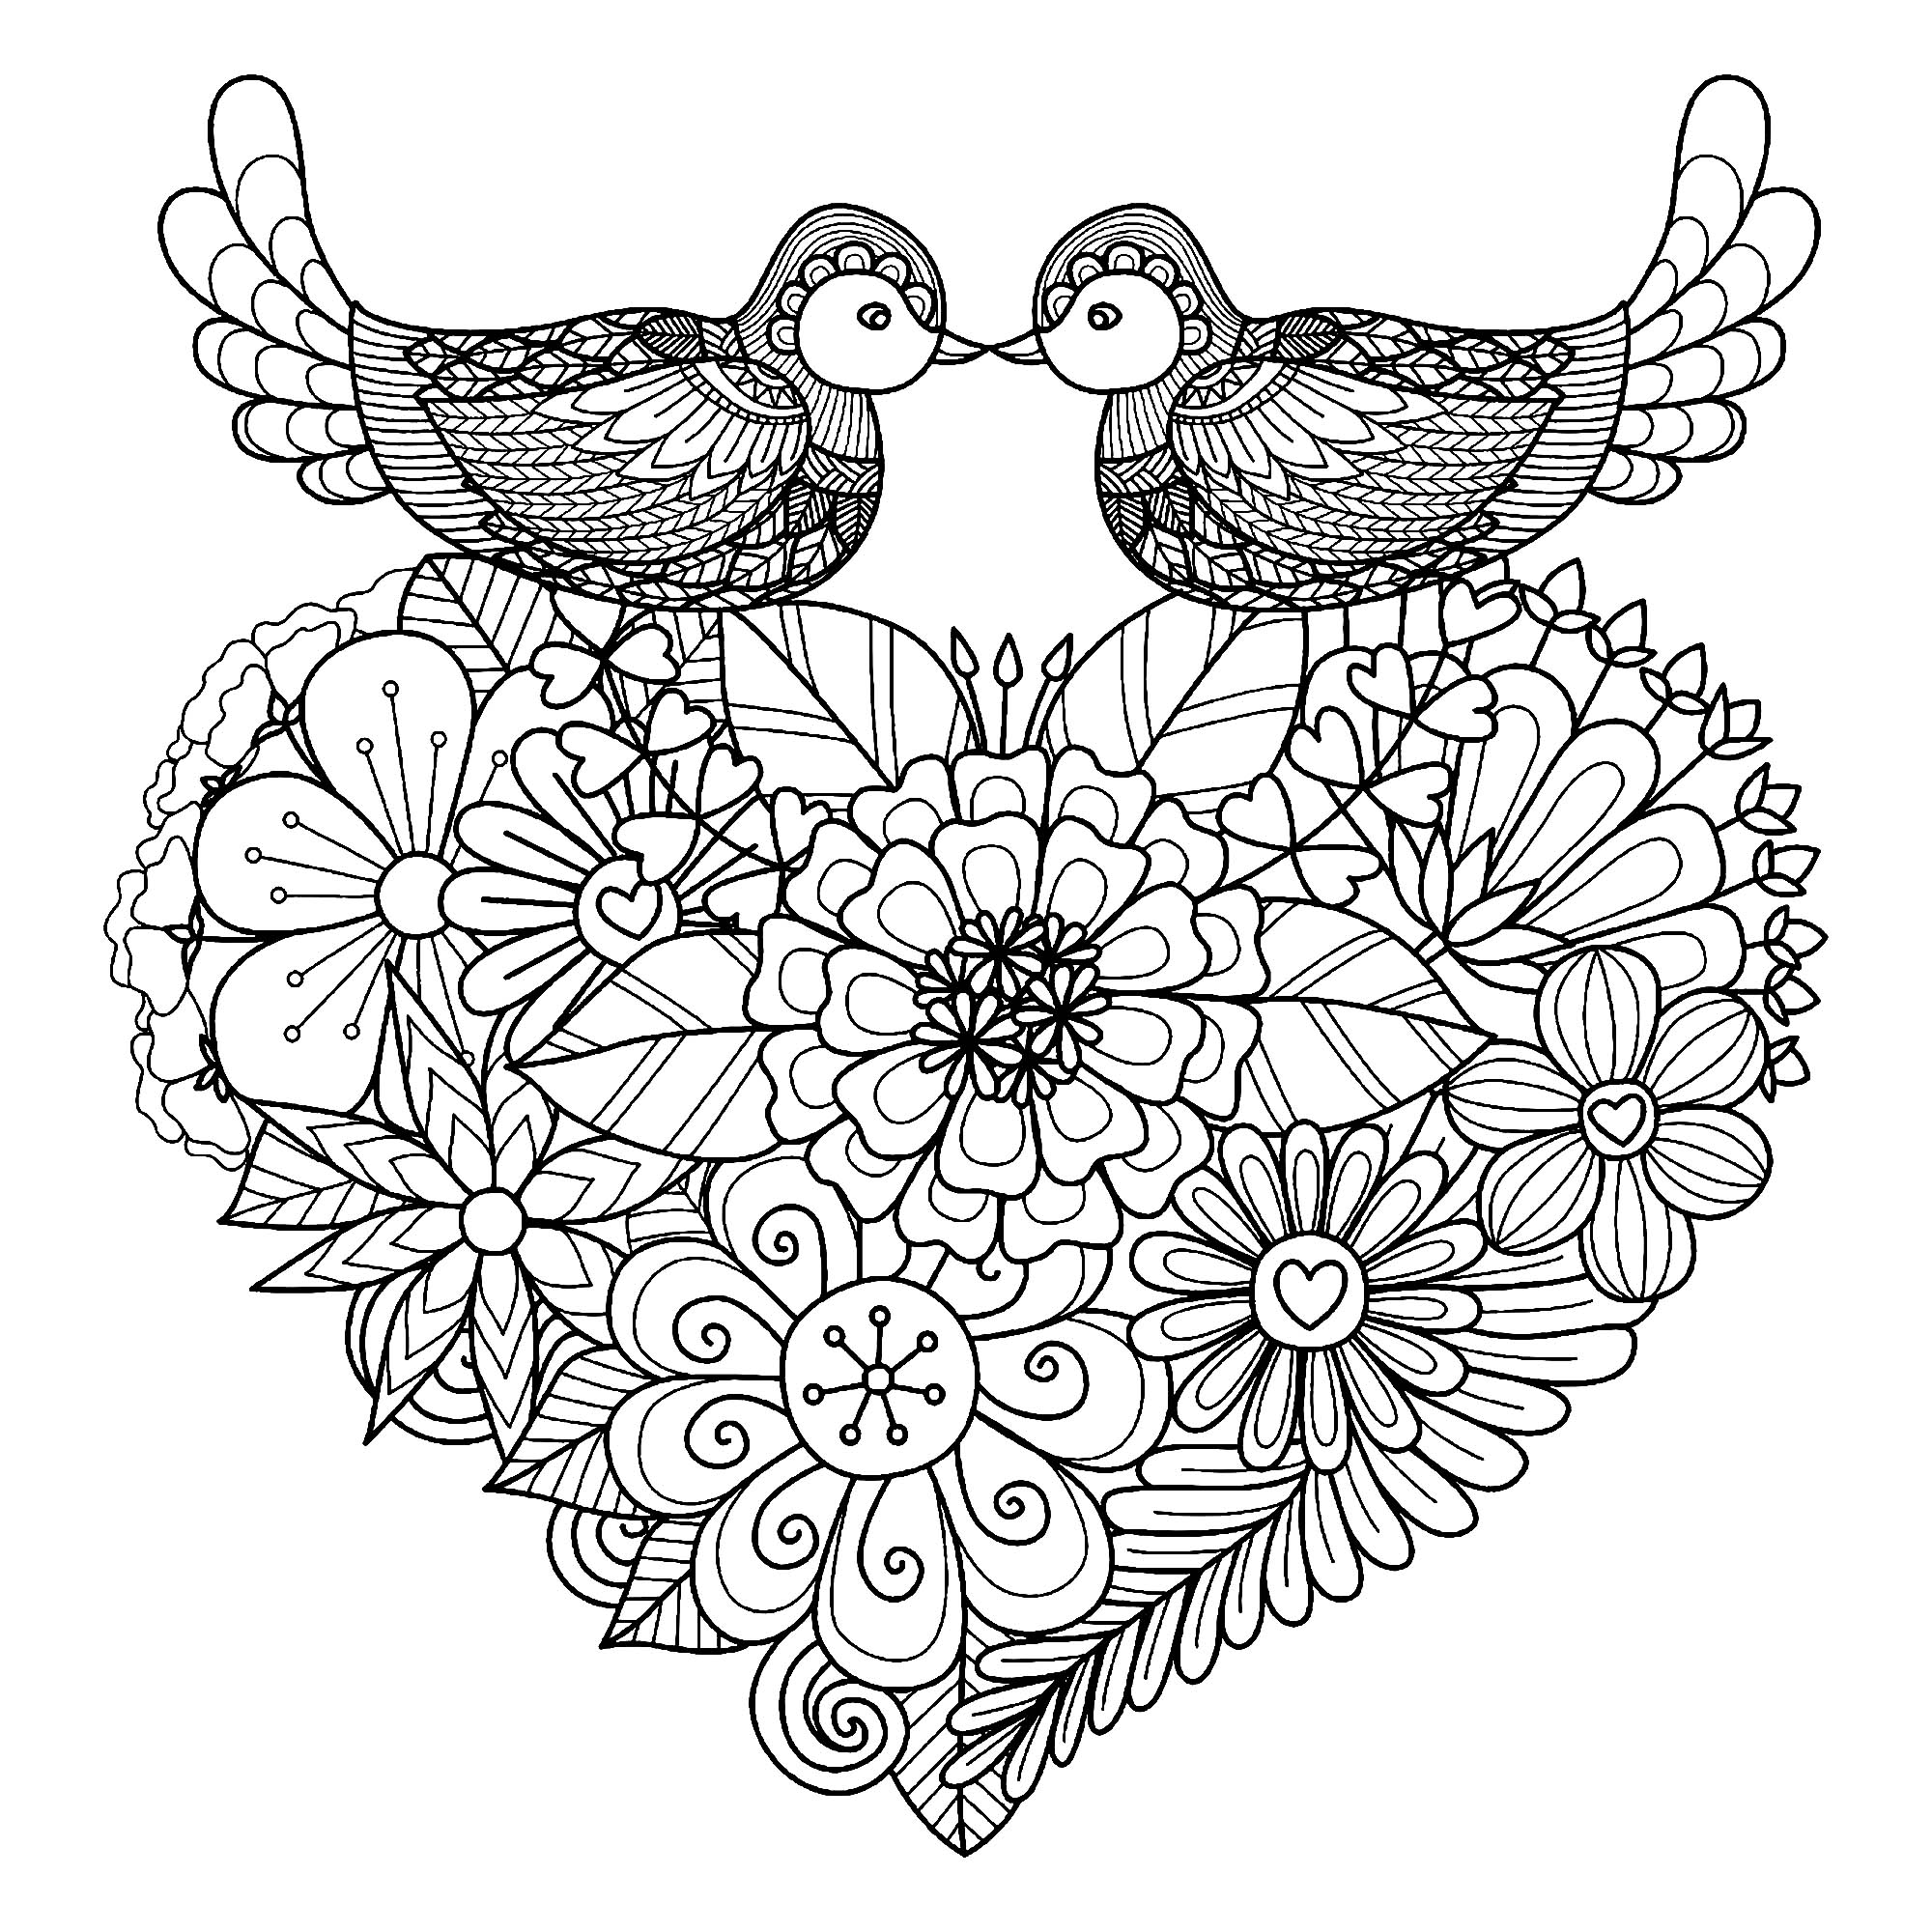 Colorea estos dos pájaros simétricos que descansan sobre un corazón lleno de flores originales, Artista : Bimdeedee   Origen : 123rf